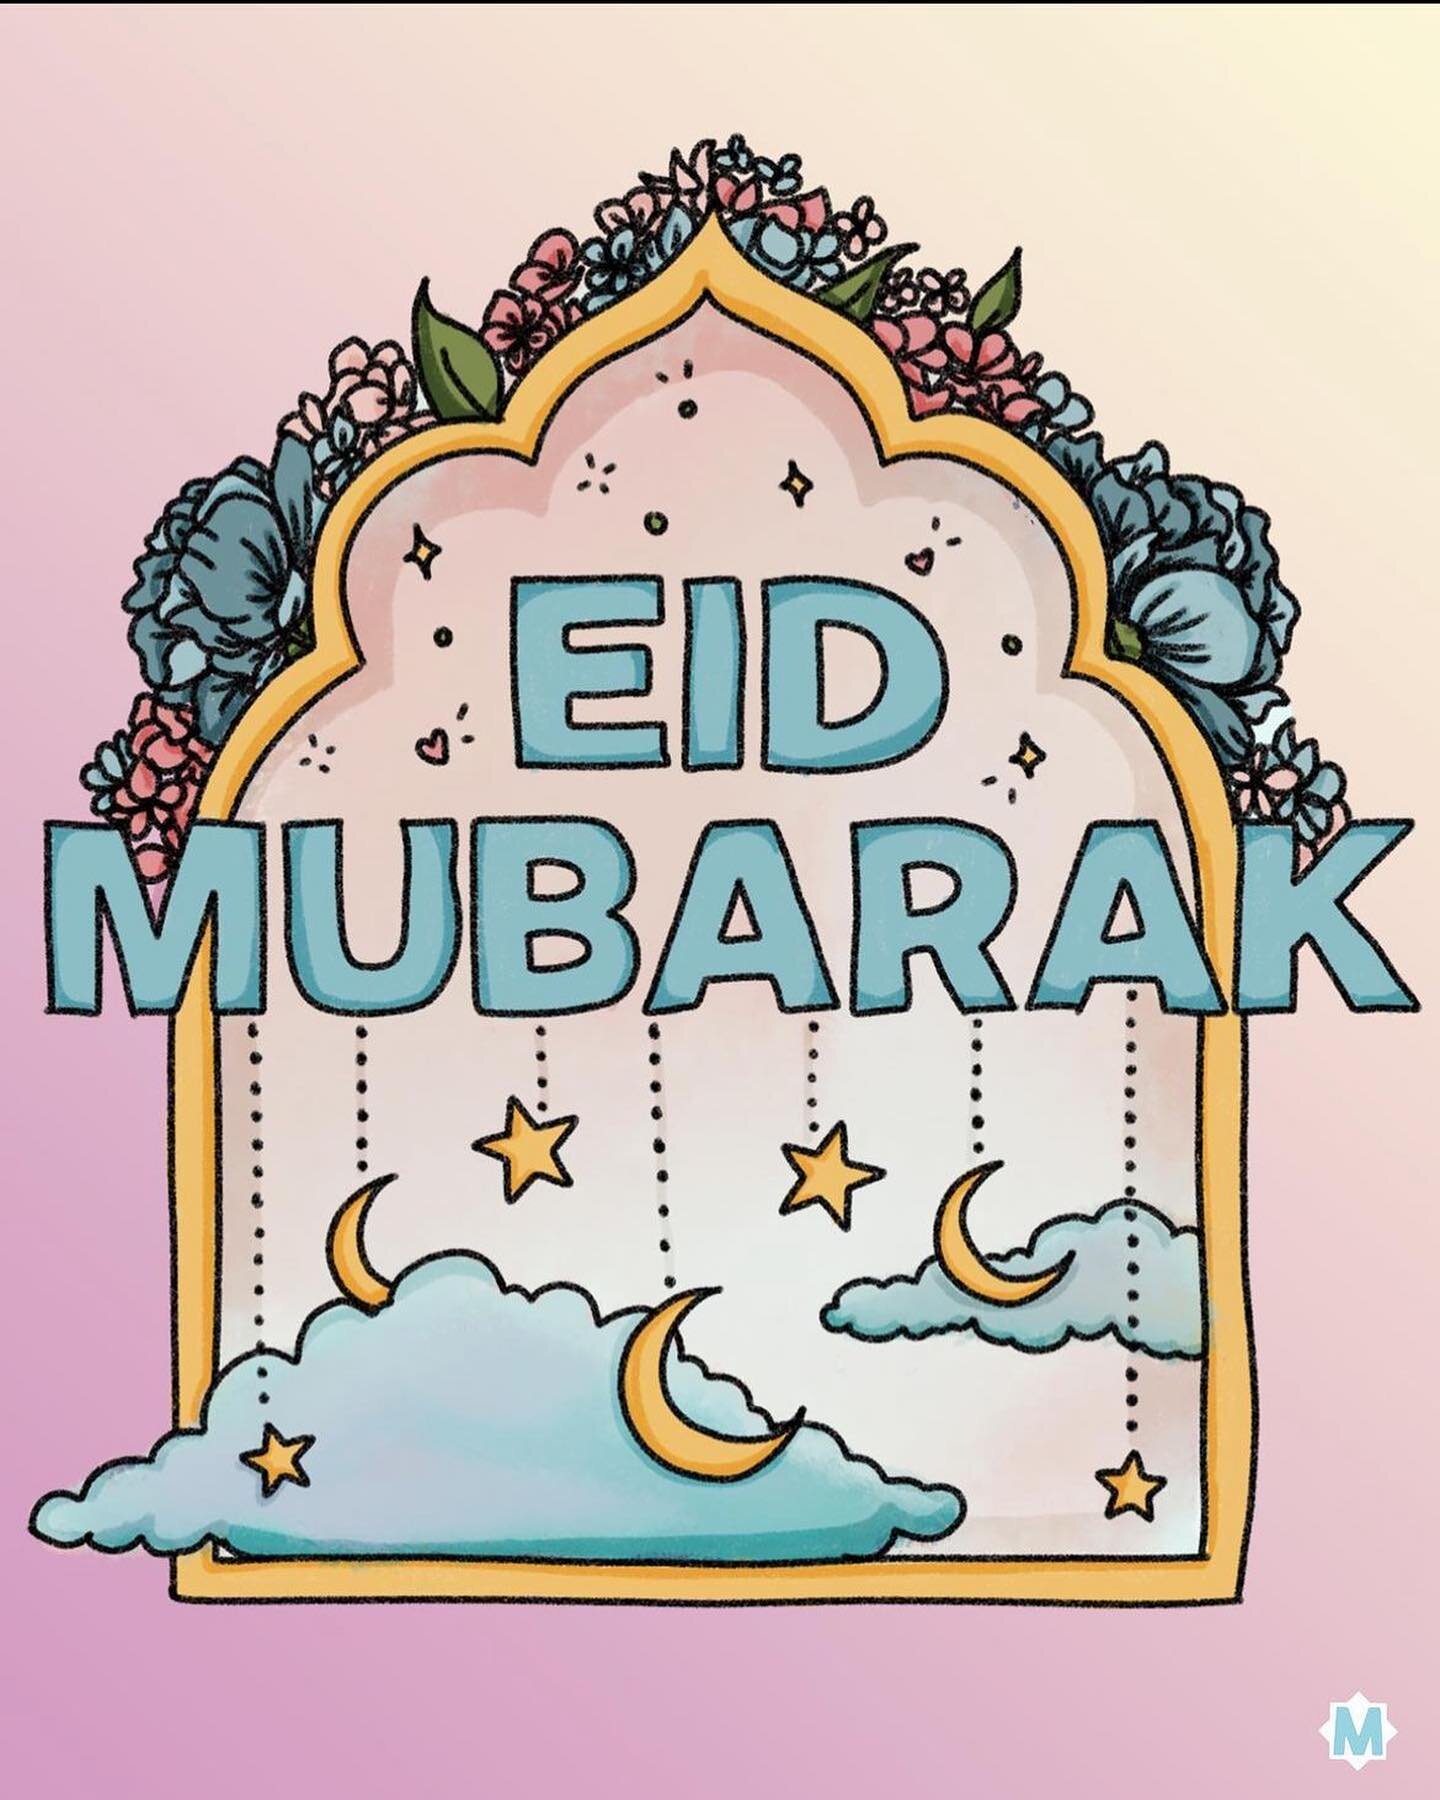 Eid Mubarak ❤️
Gratulerer til alle som nylig har gjennomf&oslash;rt &aring;rets Ramadhan. &Oslash;nsker alle en god Eid feiring med familie, venner og bekjente ✨❤️